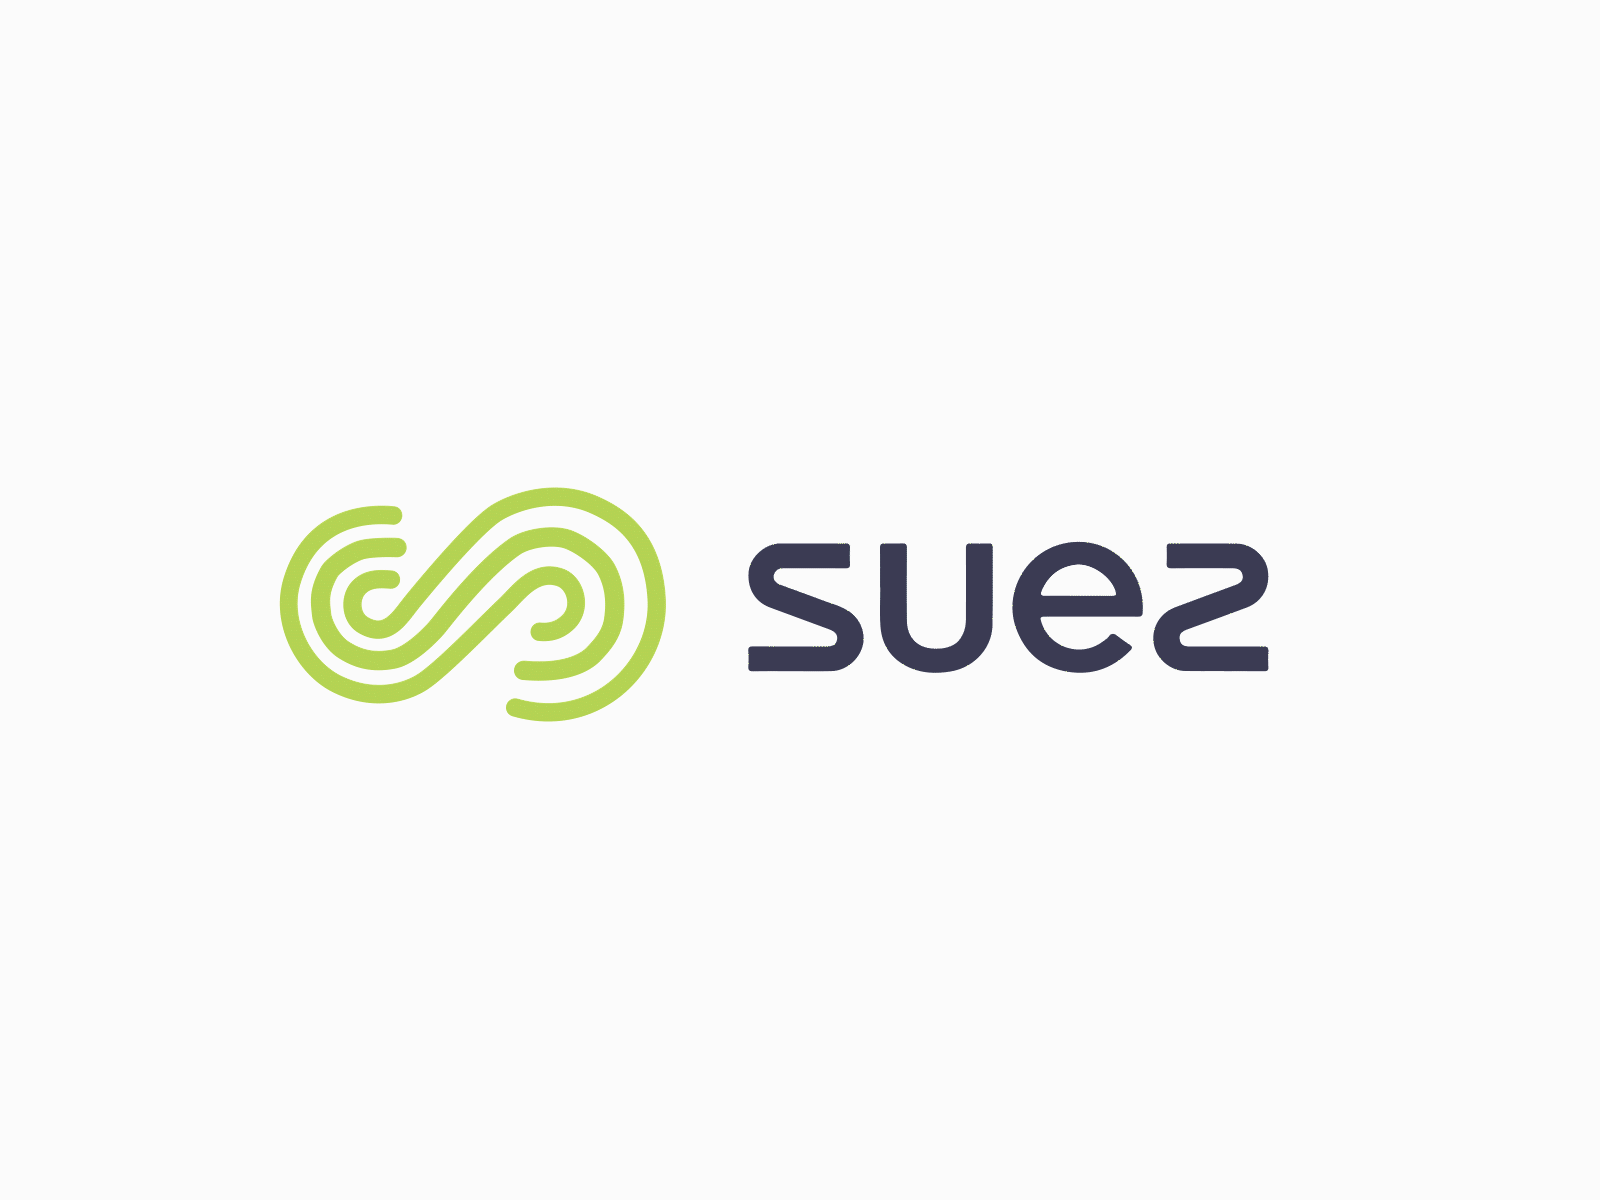 suez-logo-animated-by-abdellatif-el-mahmoudy-on-dribbble